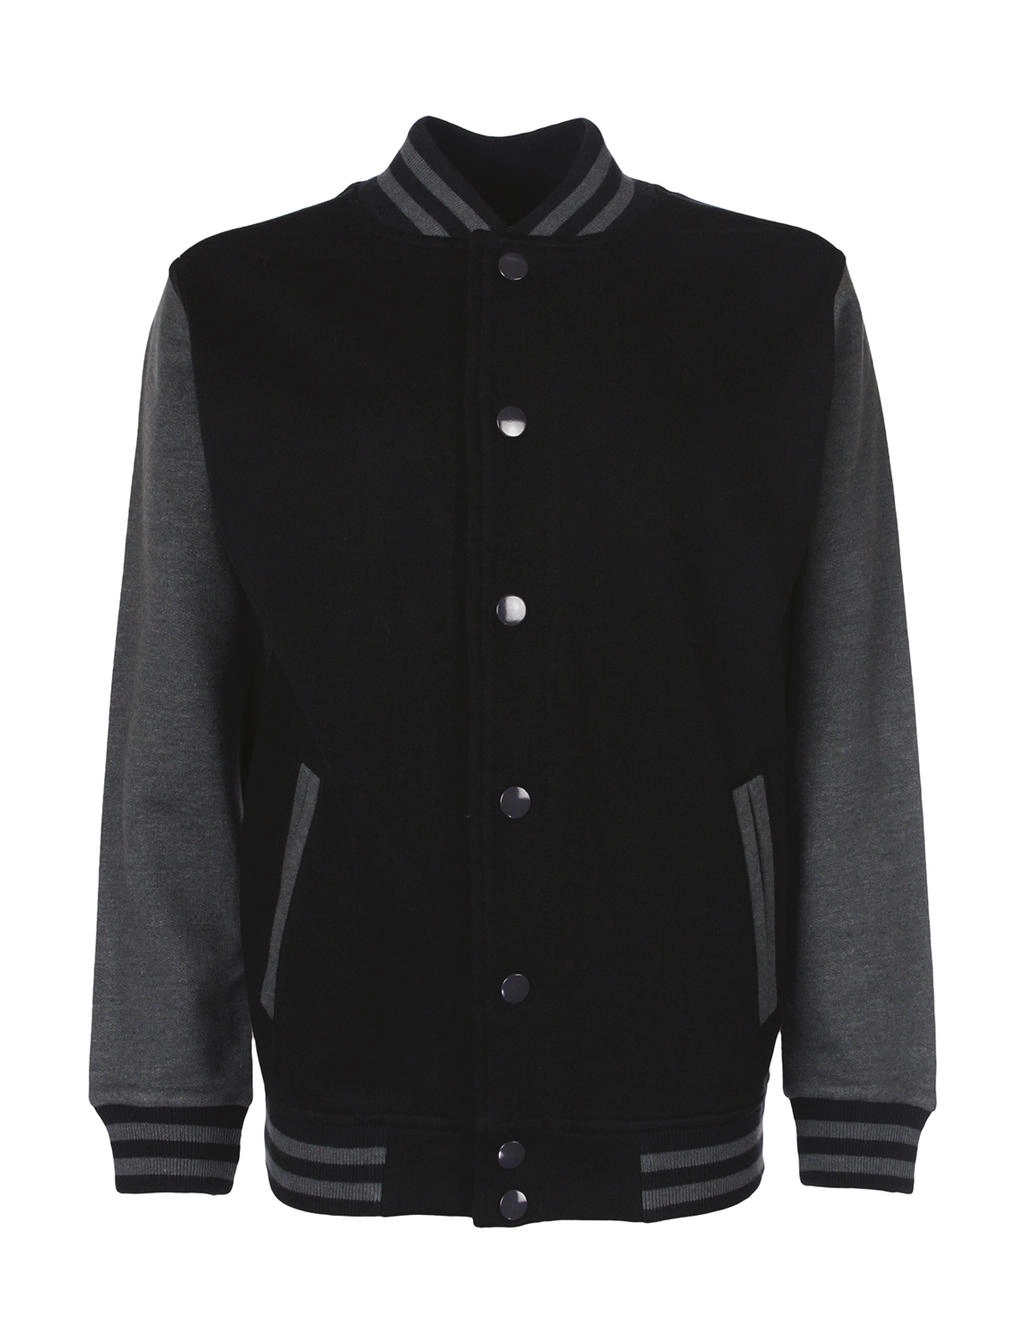 Junior Varsity Jacket zum Besticken und Bedrucken in der Farbe Black/Charcoal mit Ihren Logo, Schriftzug oder Motiv.